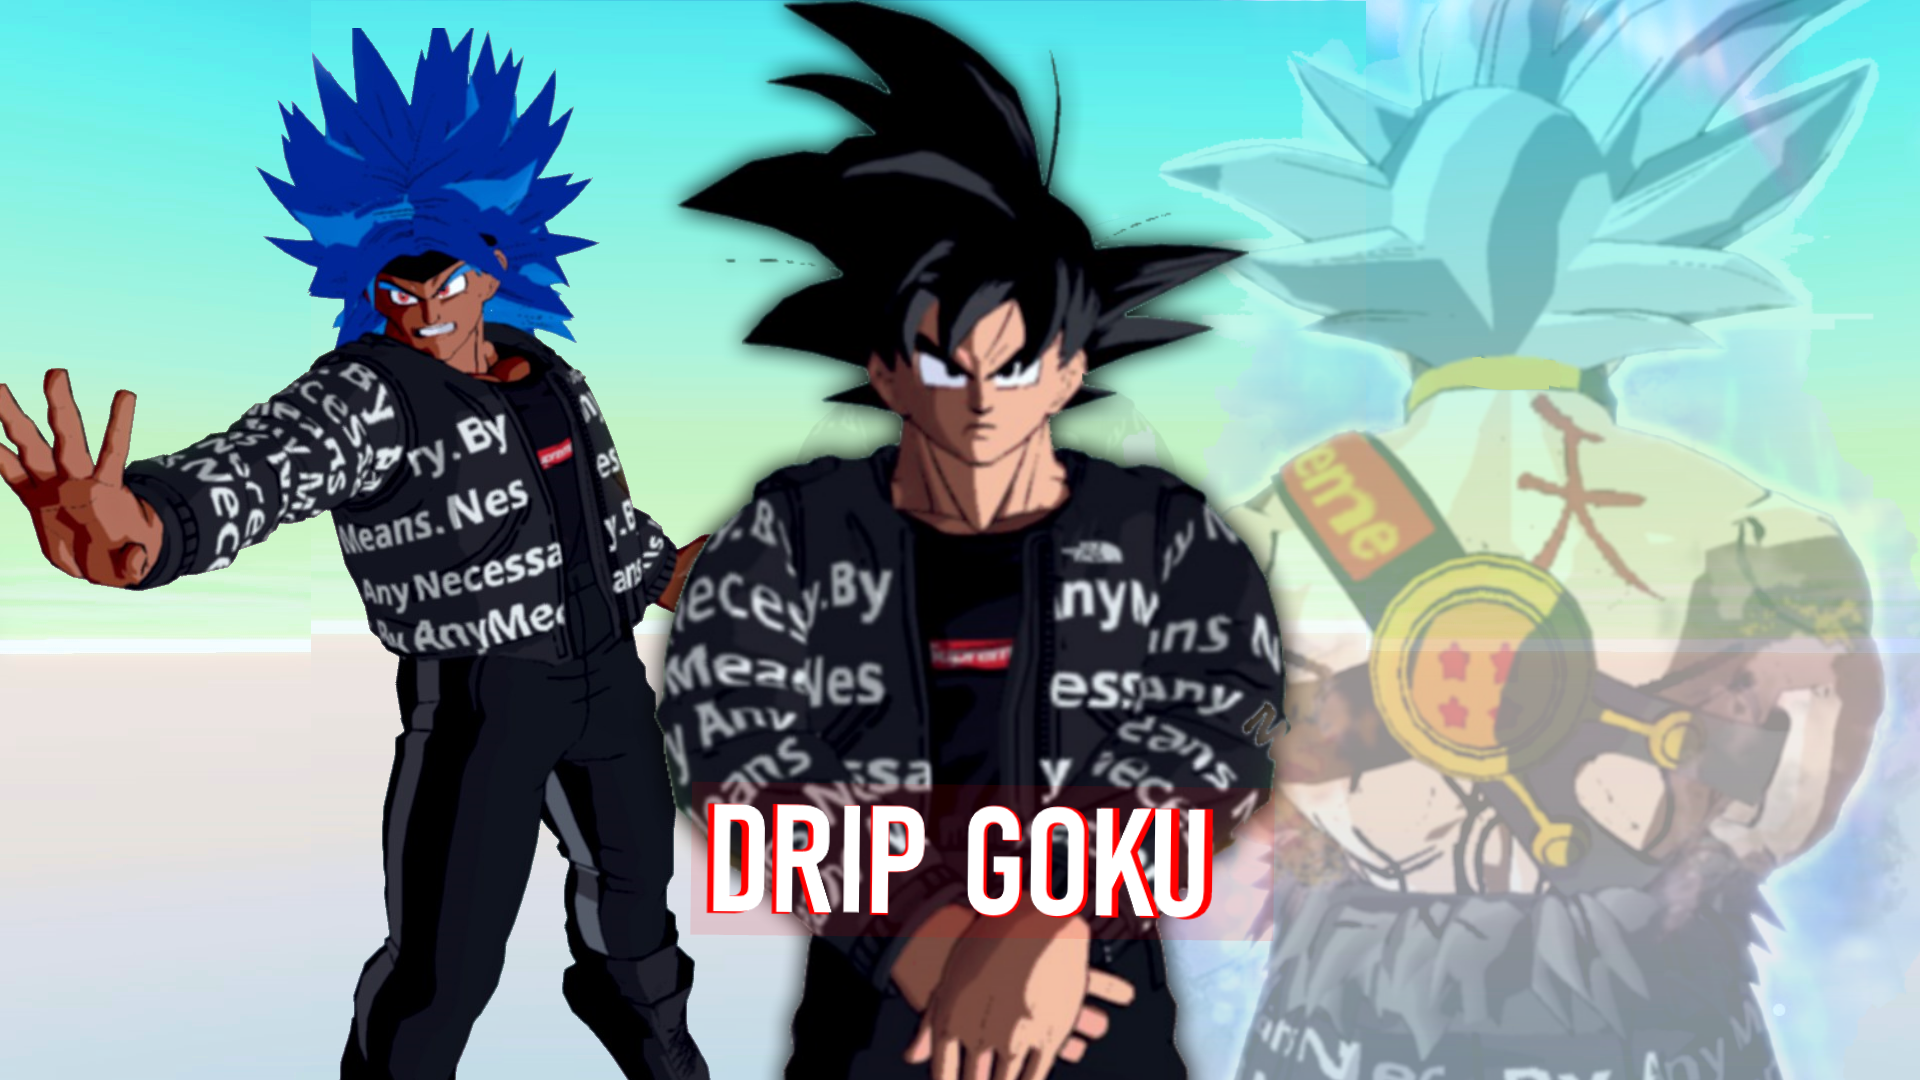 Drip Goku and CAC Costumes at Dragon Ball Xenoverse 2 Nexus and community